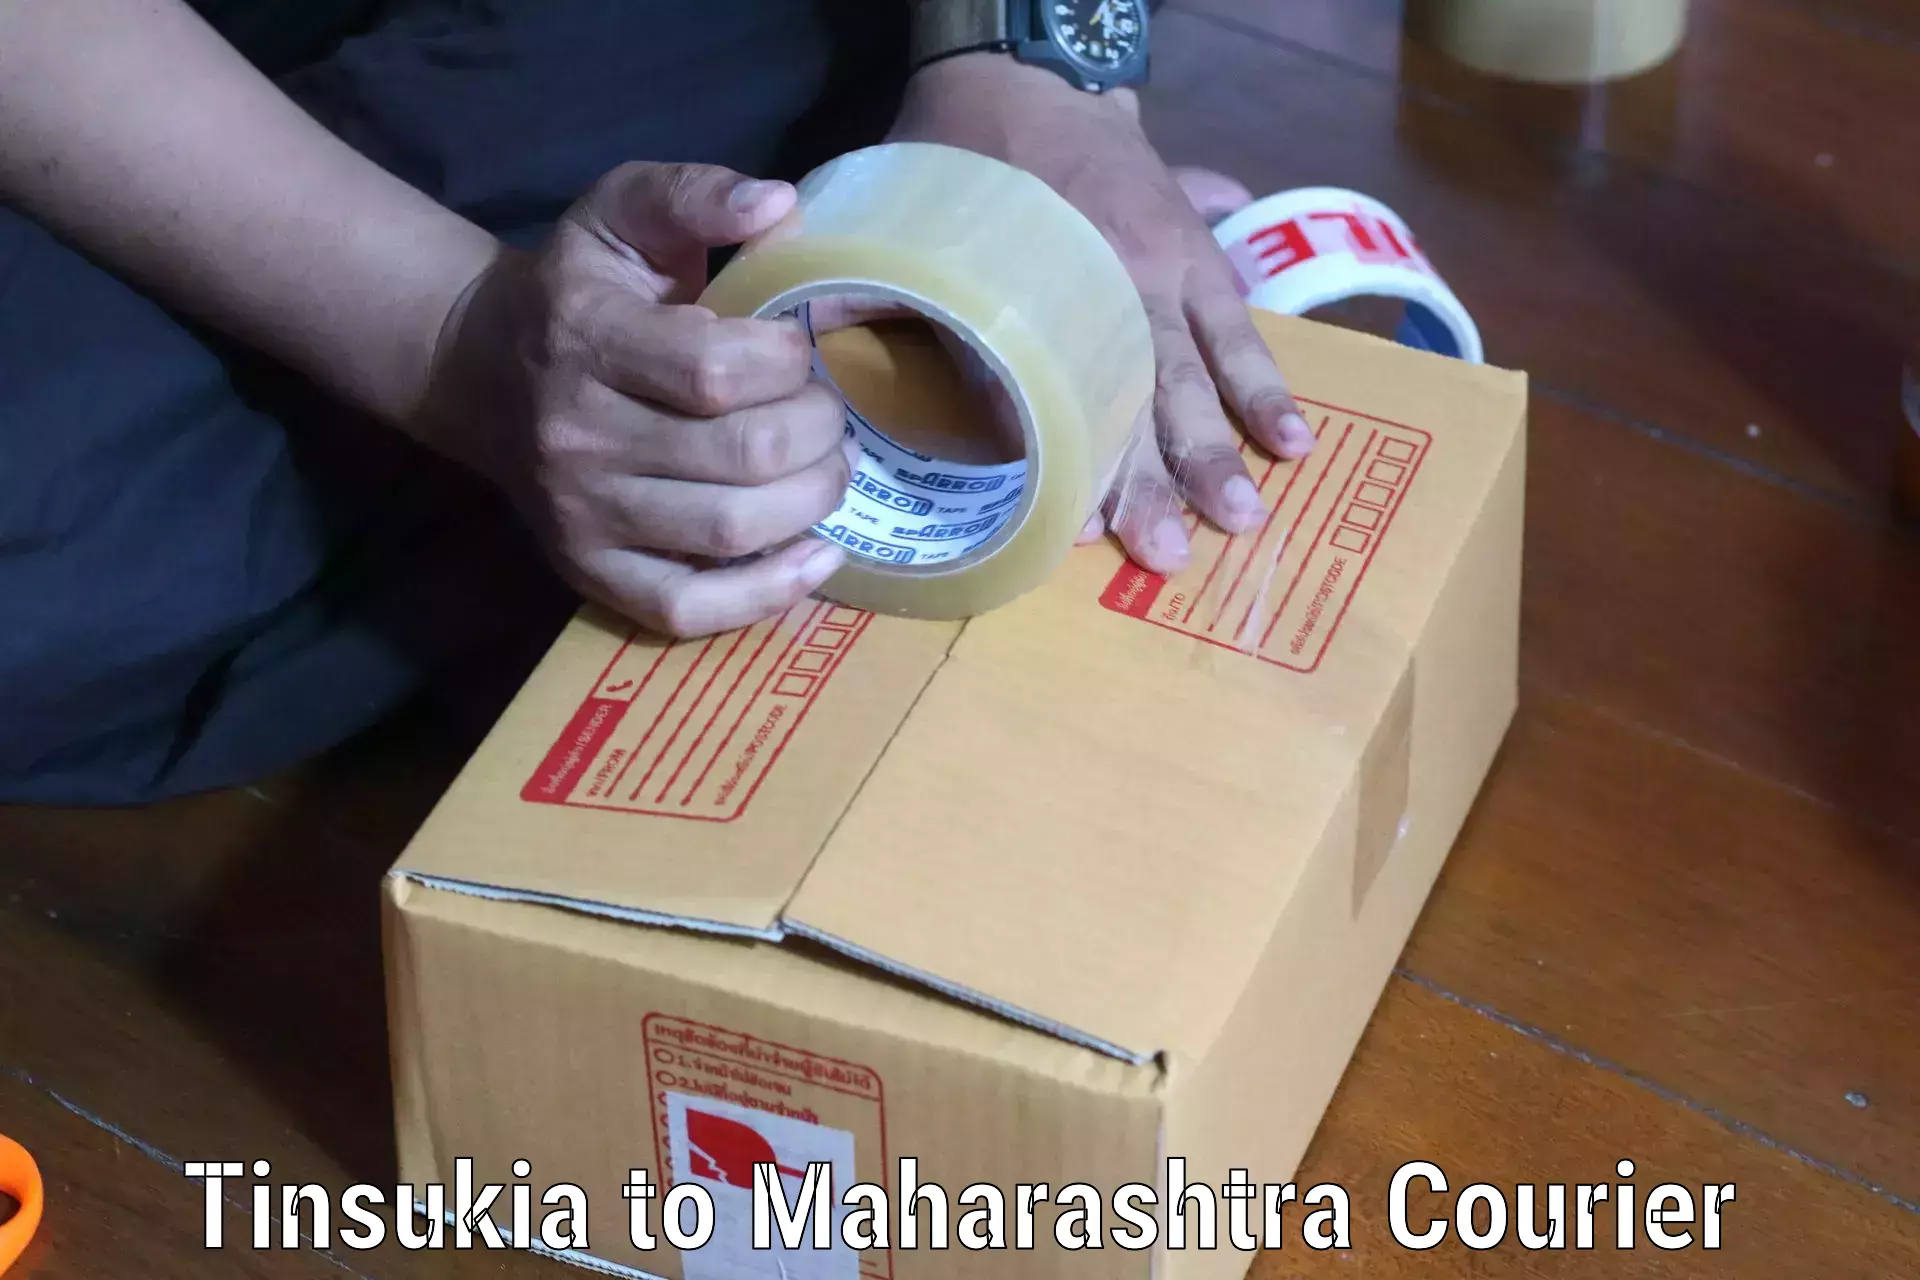 24/7 courier service Tinsukia to Mumbai Port